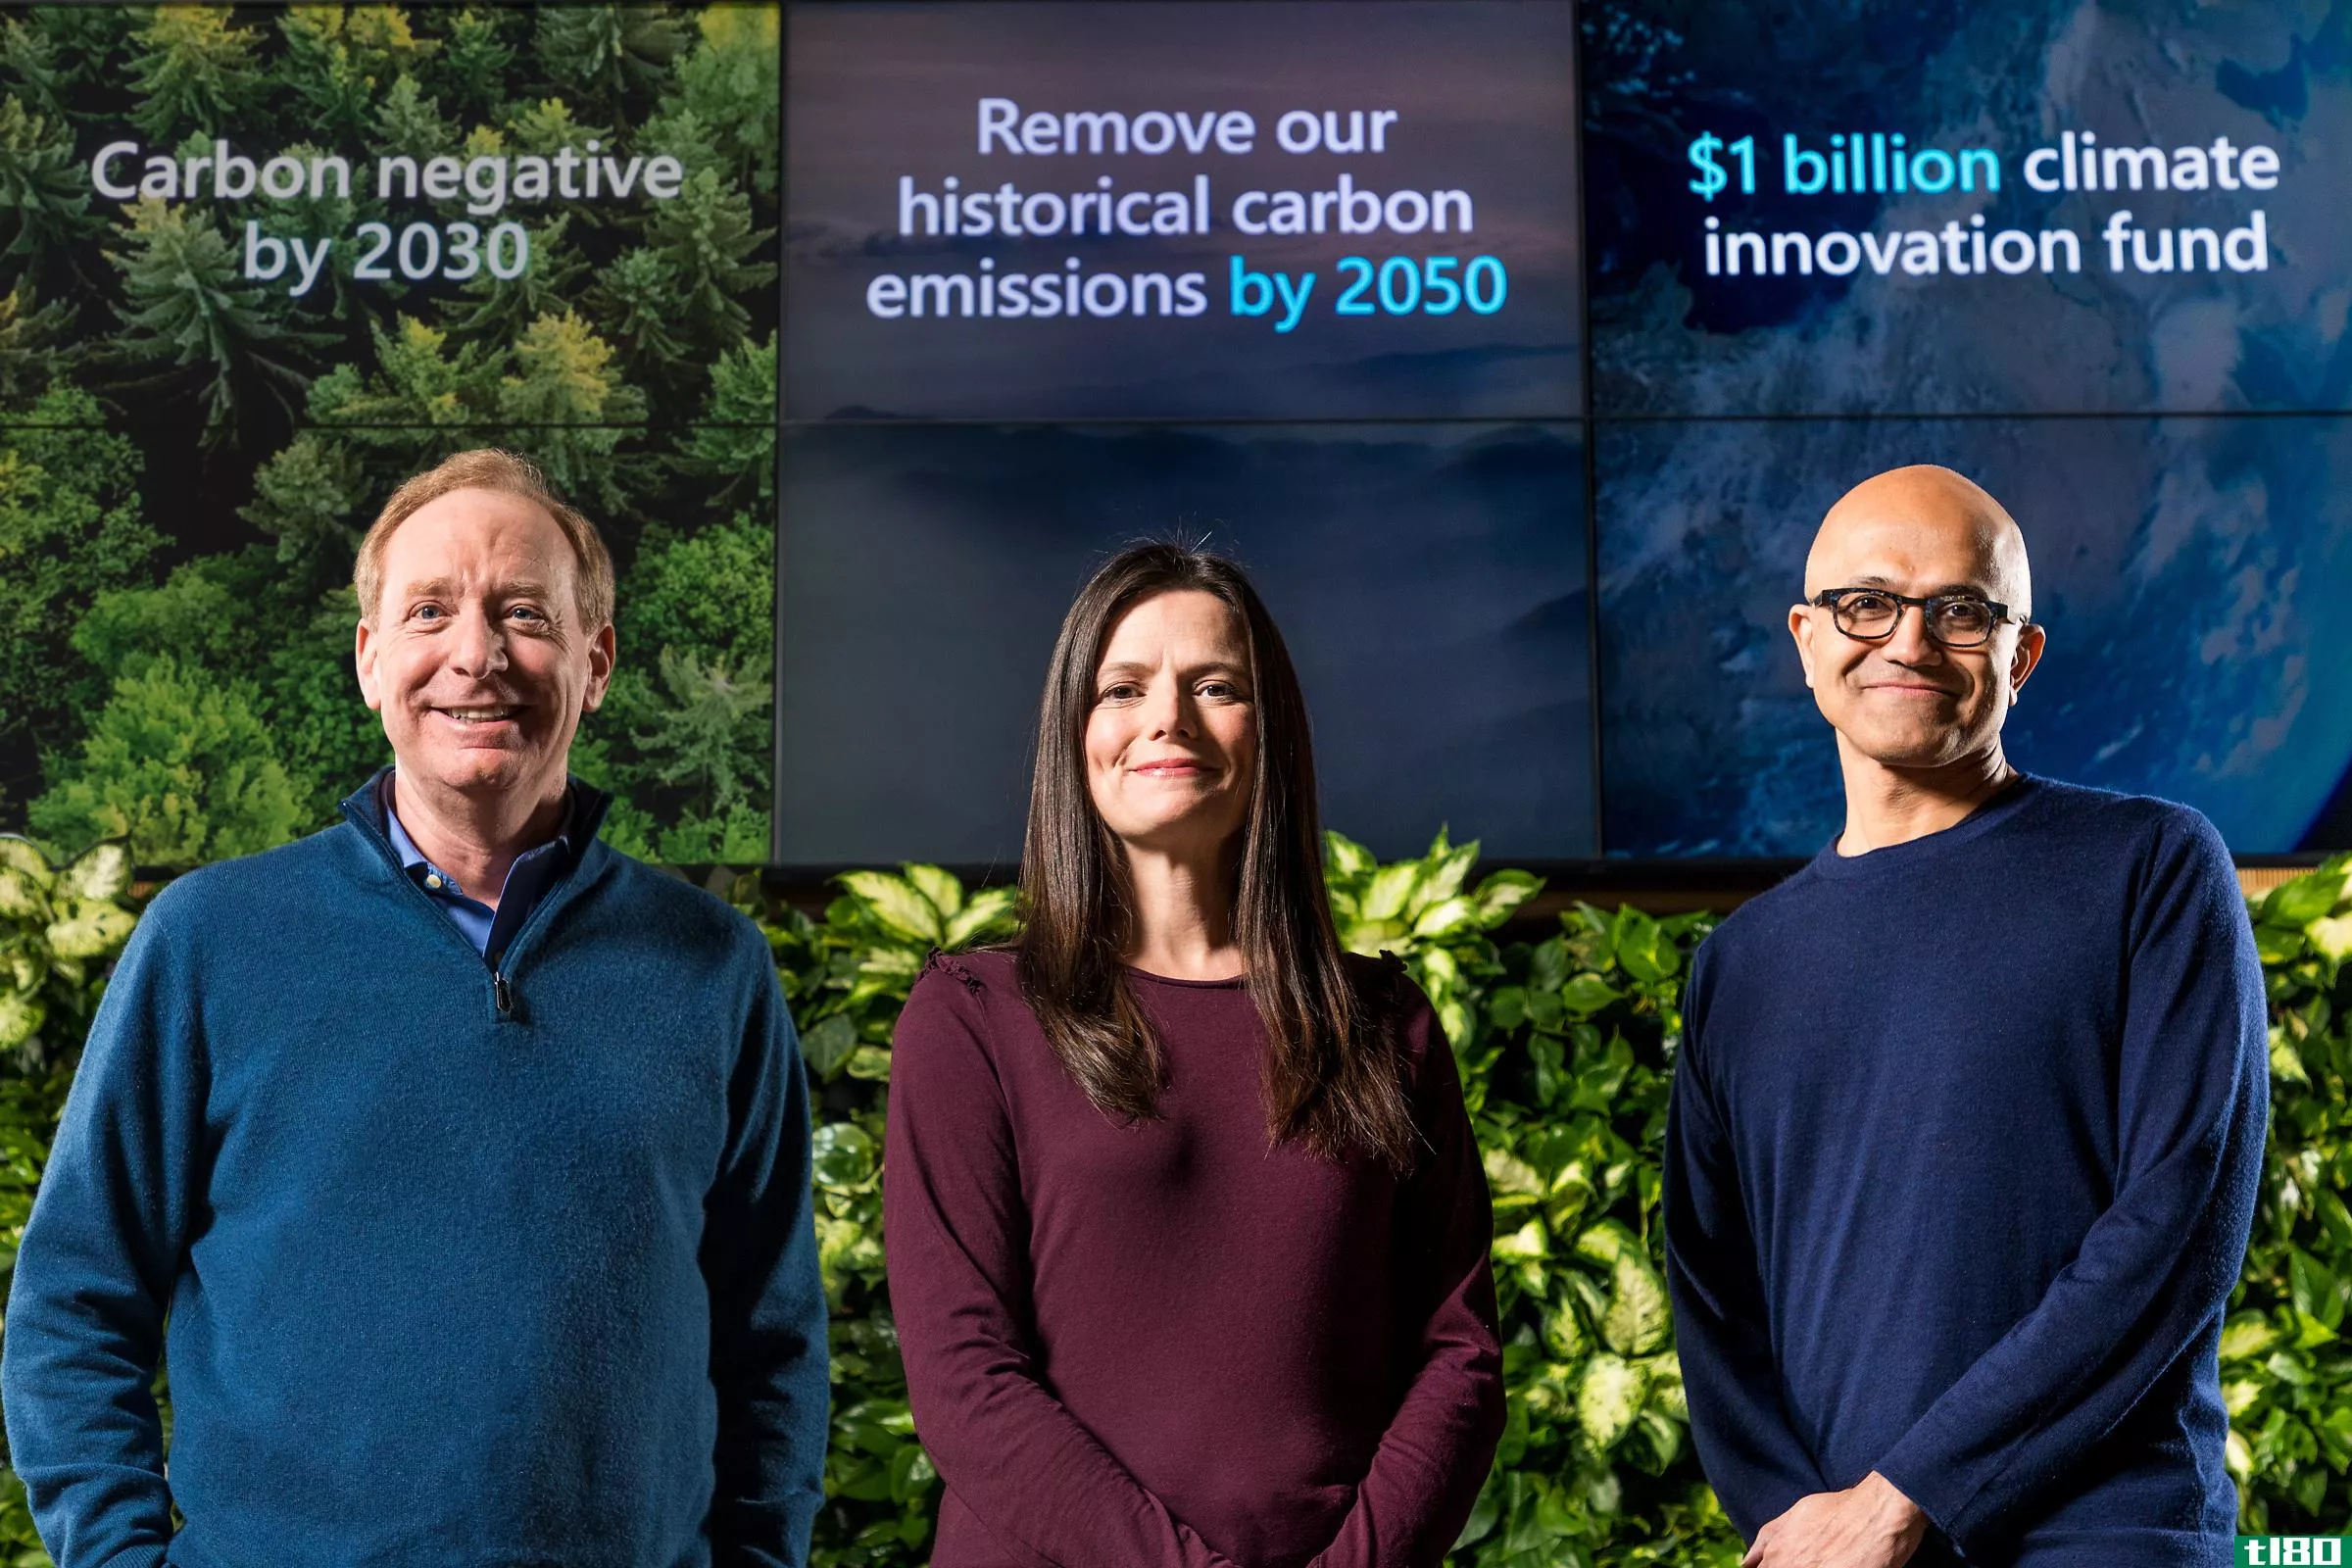 微软希望捕获它曾经排放的所有二氧化碳